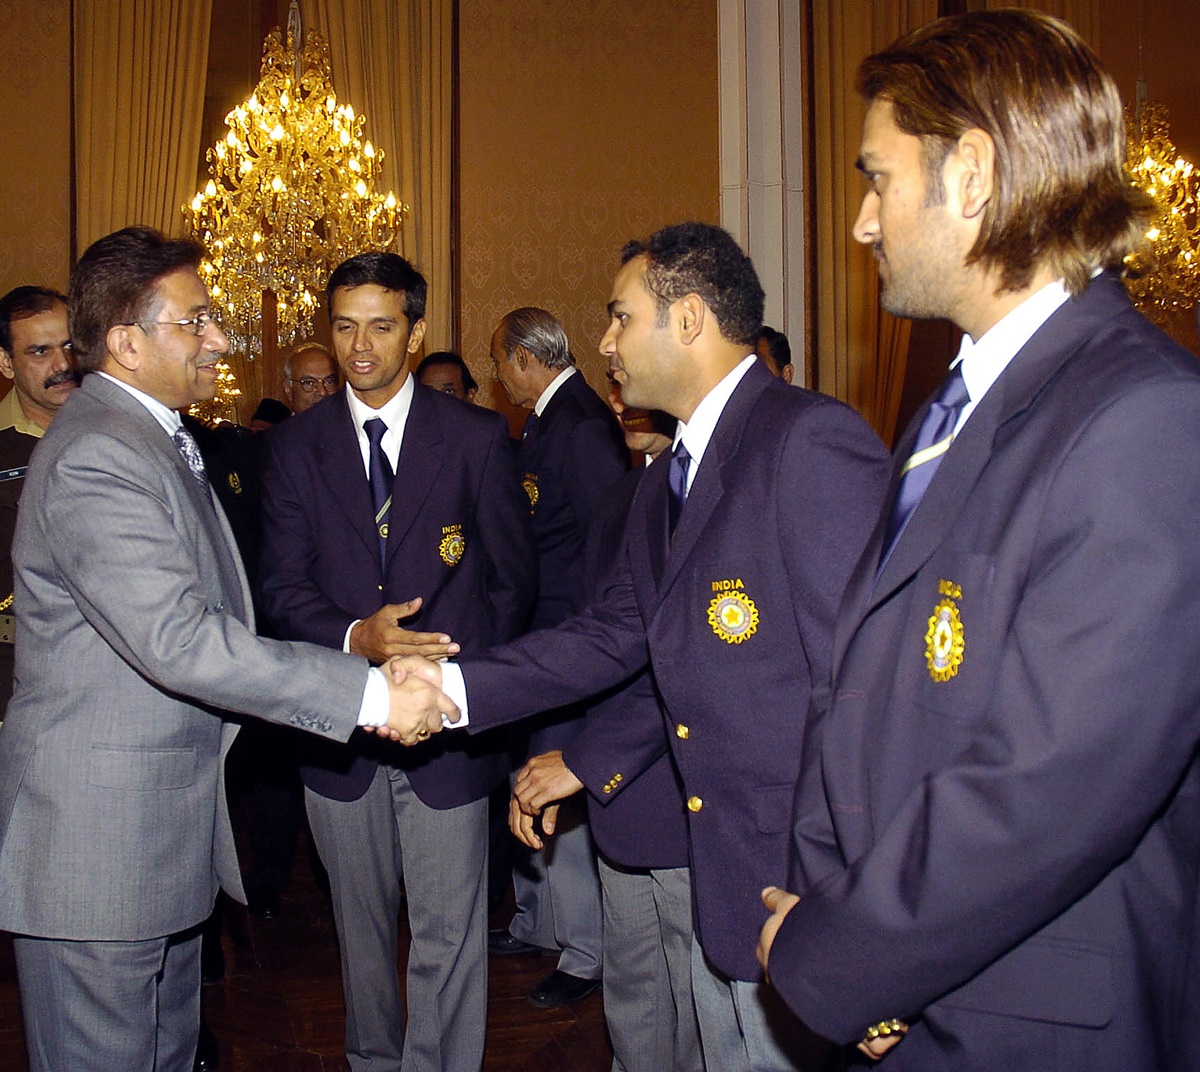 When Musharraf hailed Balaji: 'I salute your spirit'